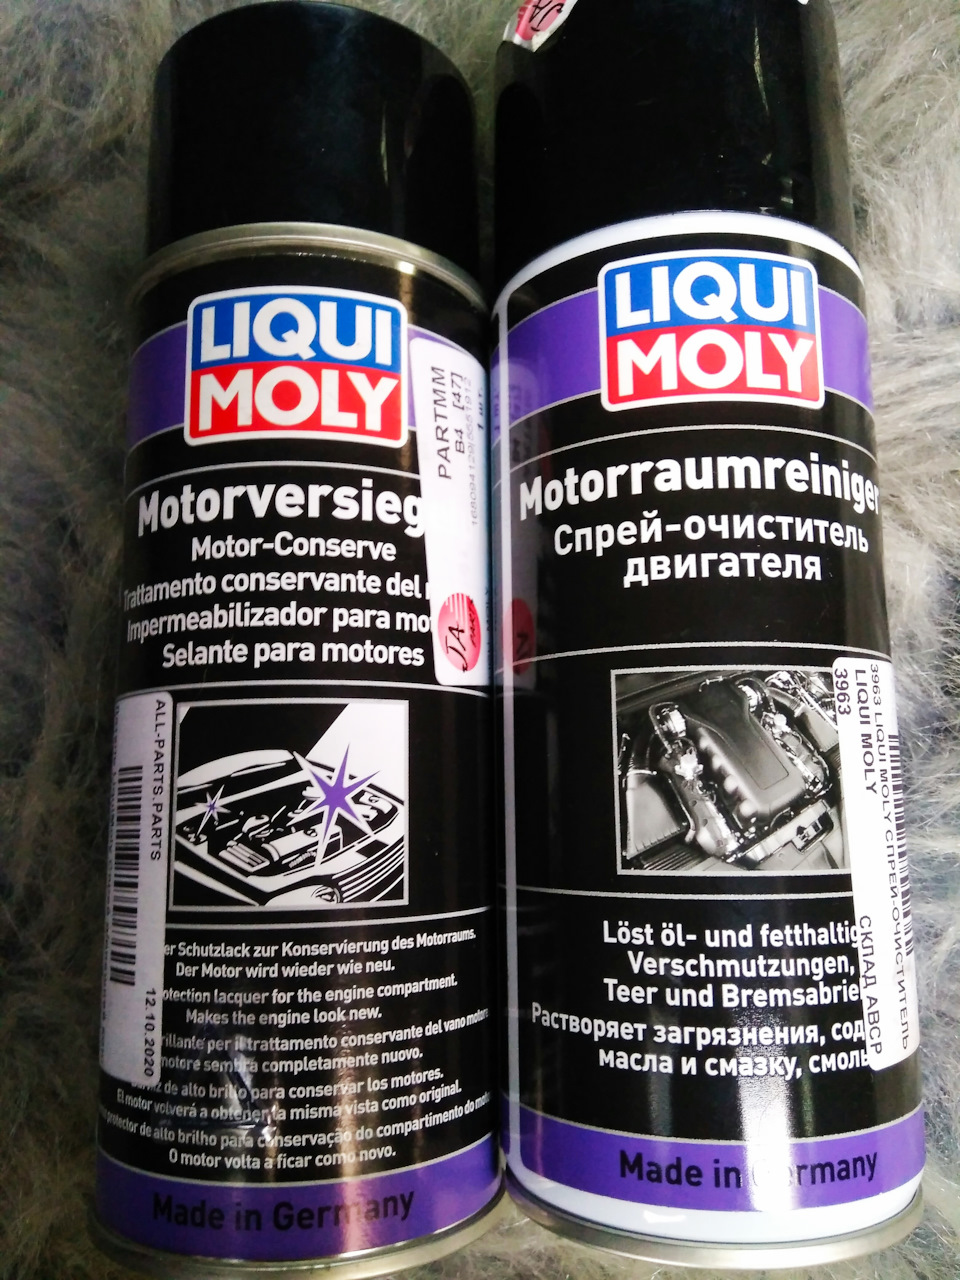 Спрей-очиститель двигателя LIQUI MOLY Motorraum-Reiniger (400 ml) от  компании ТехноПарк купить в городе Санкт-Петербург